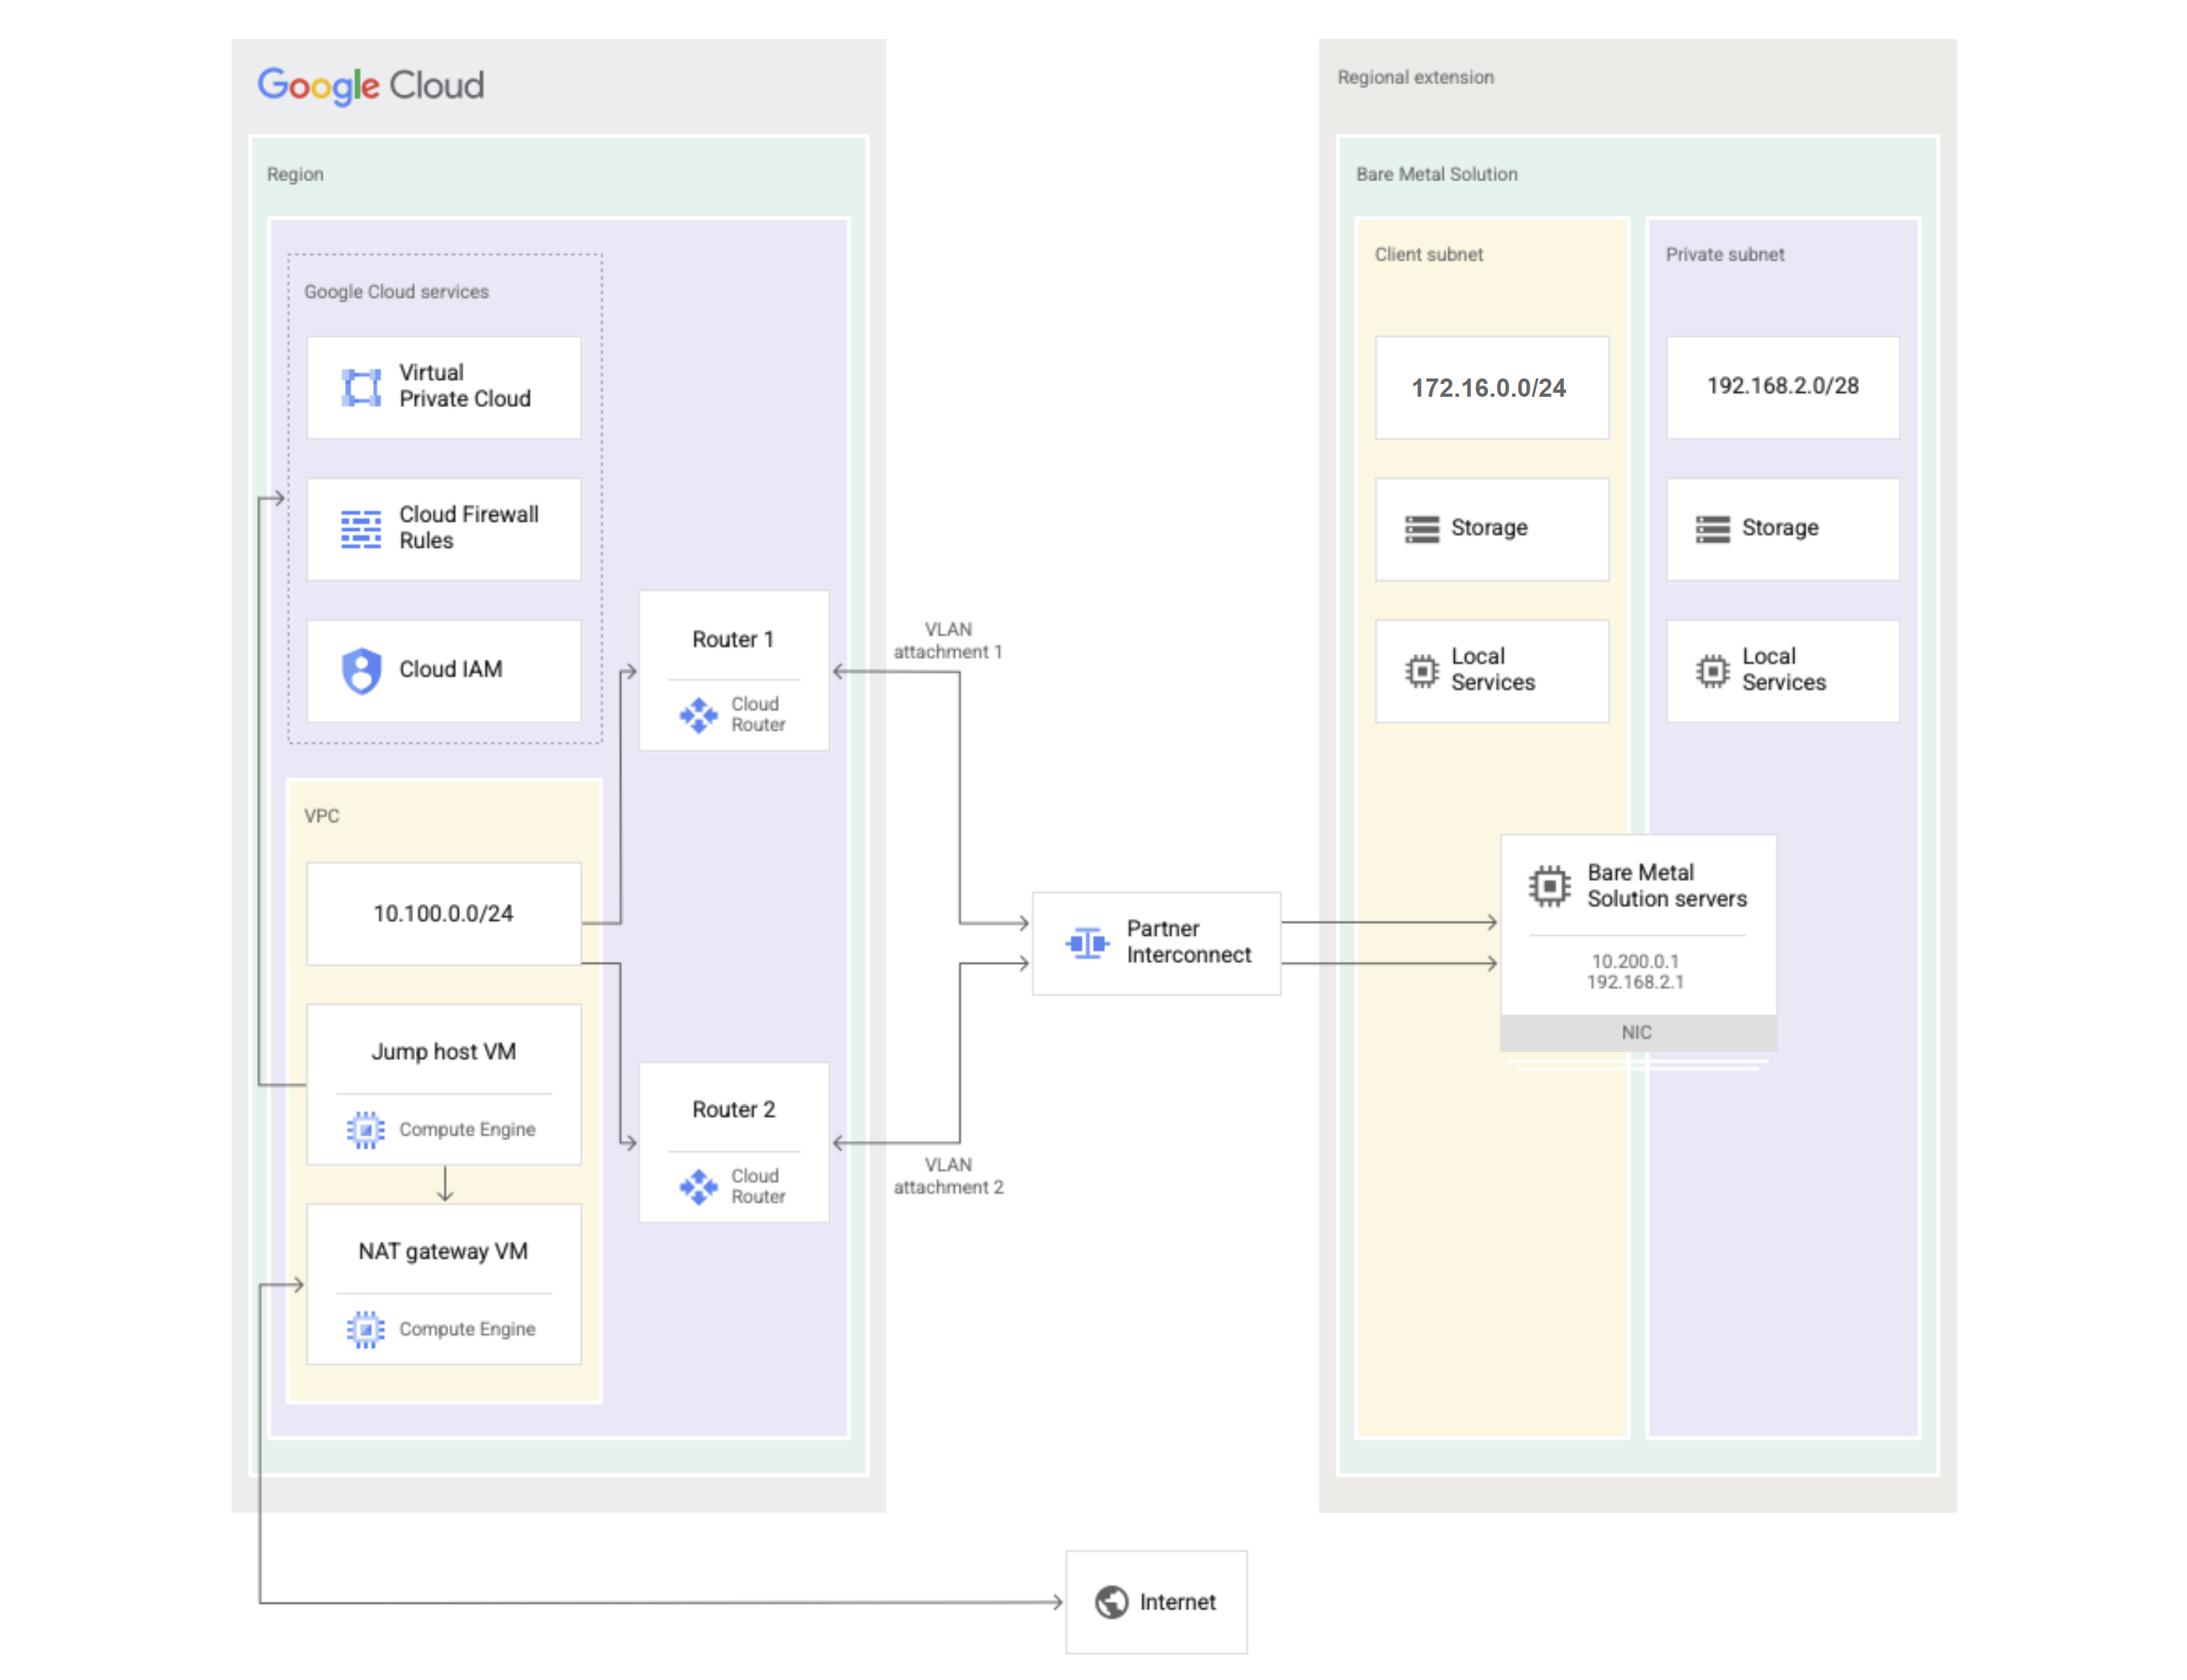 裸金属解决方案图，其中显示了哪些组件在 Google Cloud 中，哪些组件在裸金属解决方案的区域扩展中。